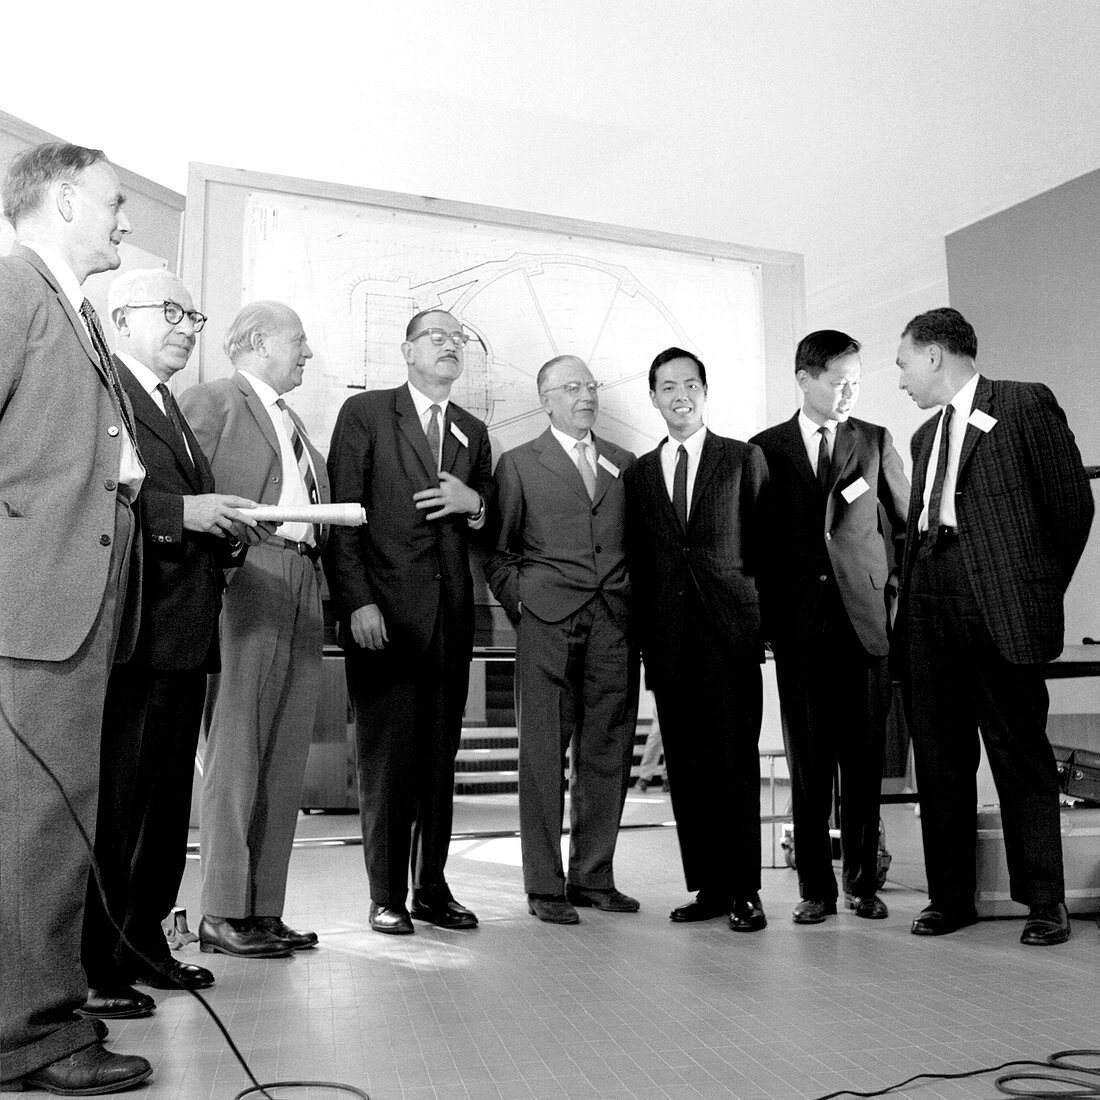 Nobel laureates at CERN symposium, July 1962